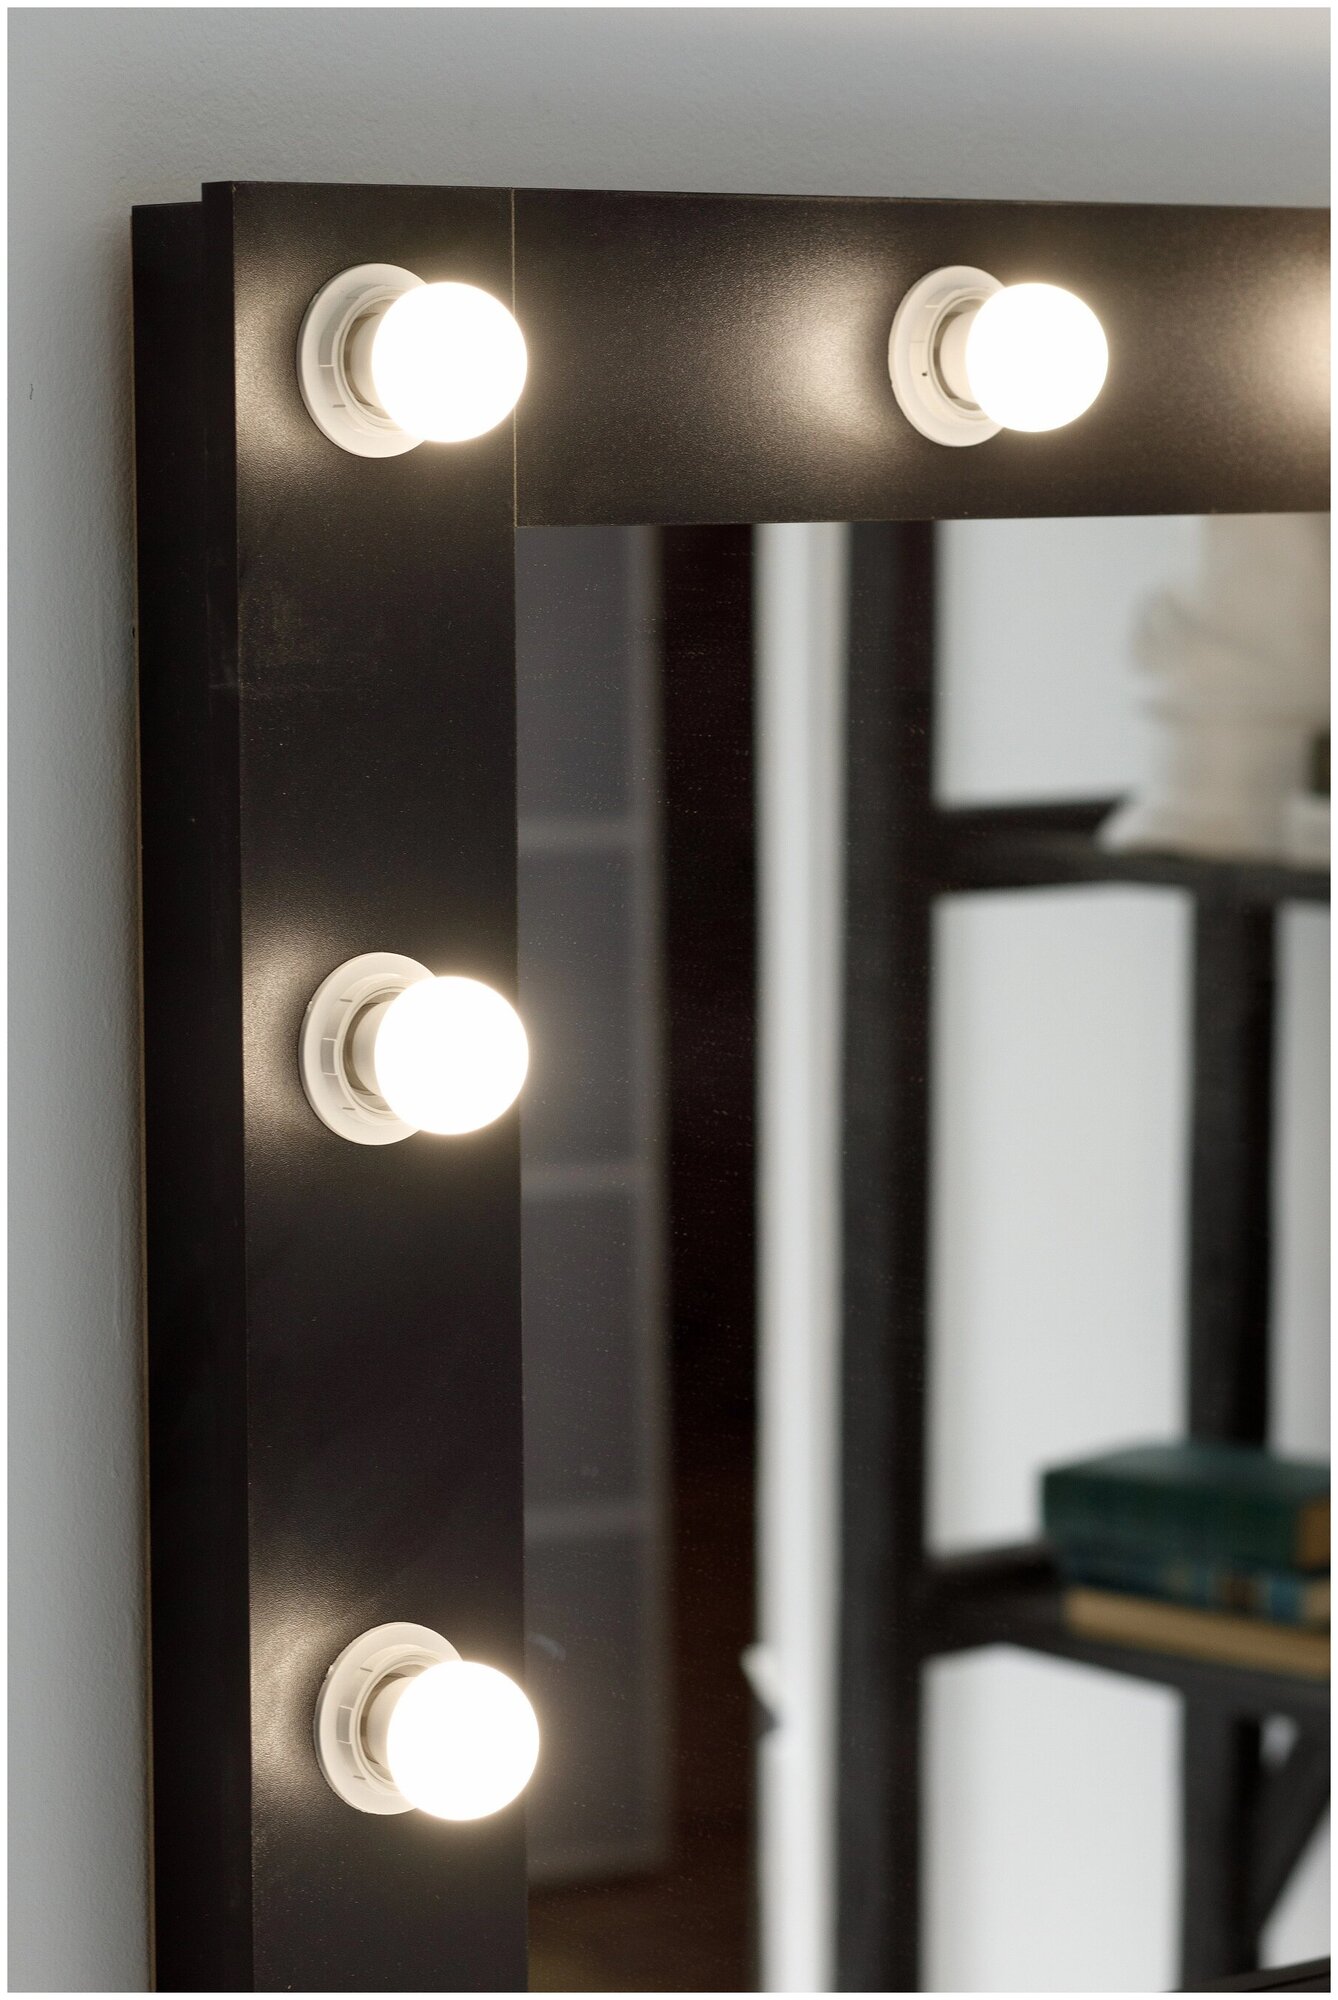 Гримерное зеркало GM Mirror, 80 см х 60 см, черный / косметическое зеркало - фотография № 6